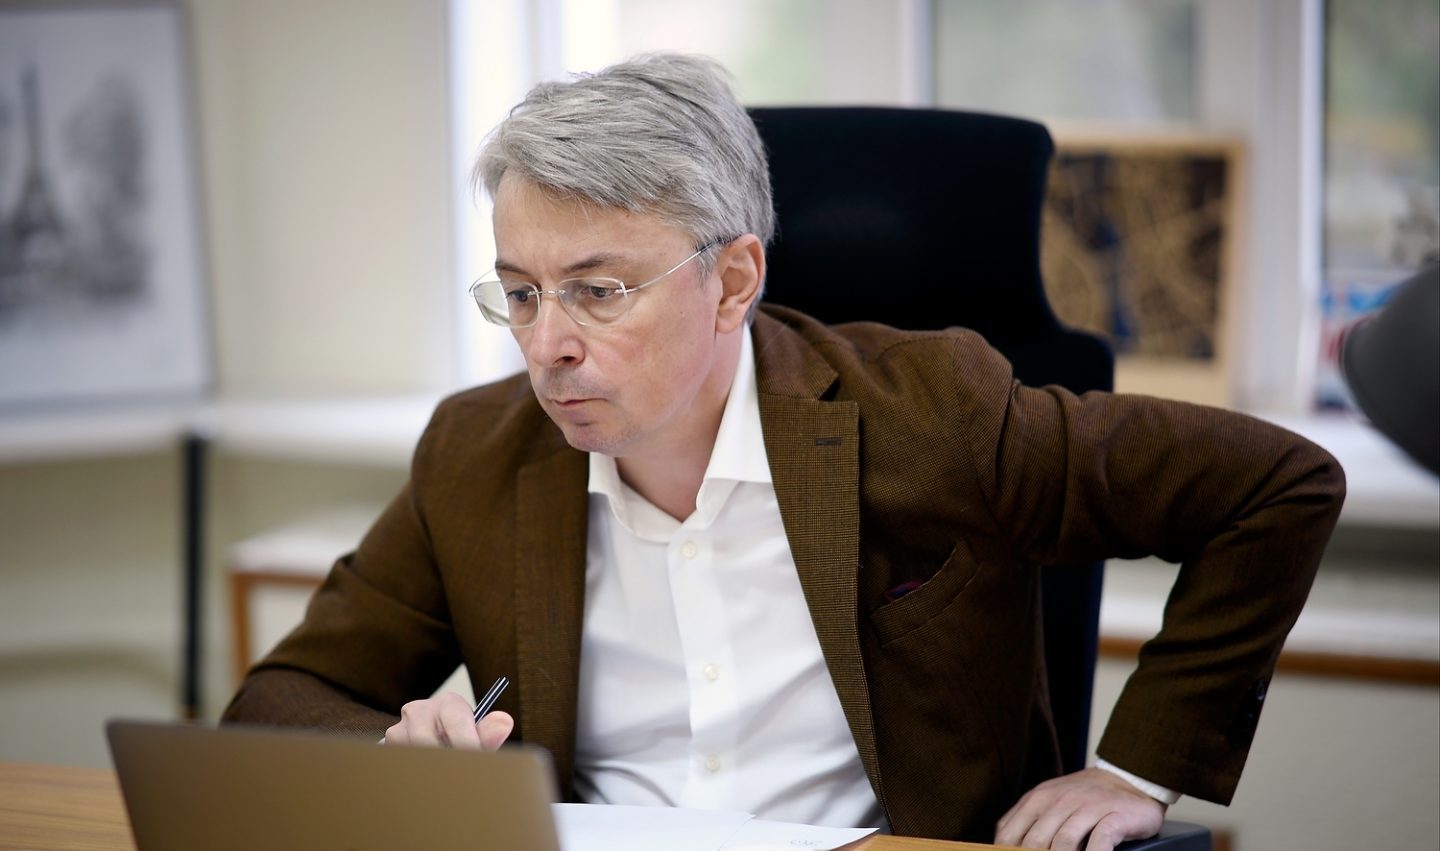 Міністр культури та інформаційної політики України Олександр Ткаченко